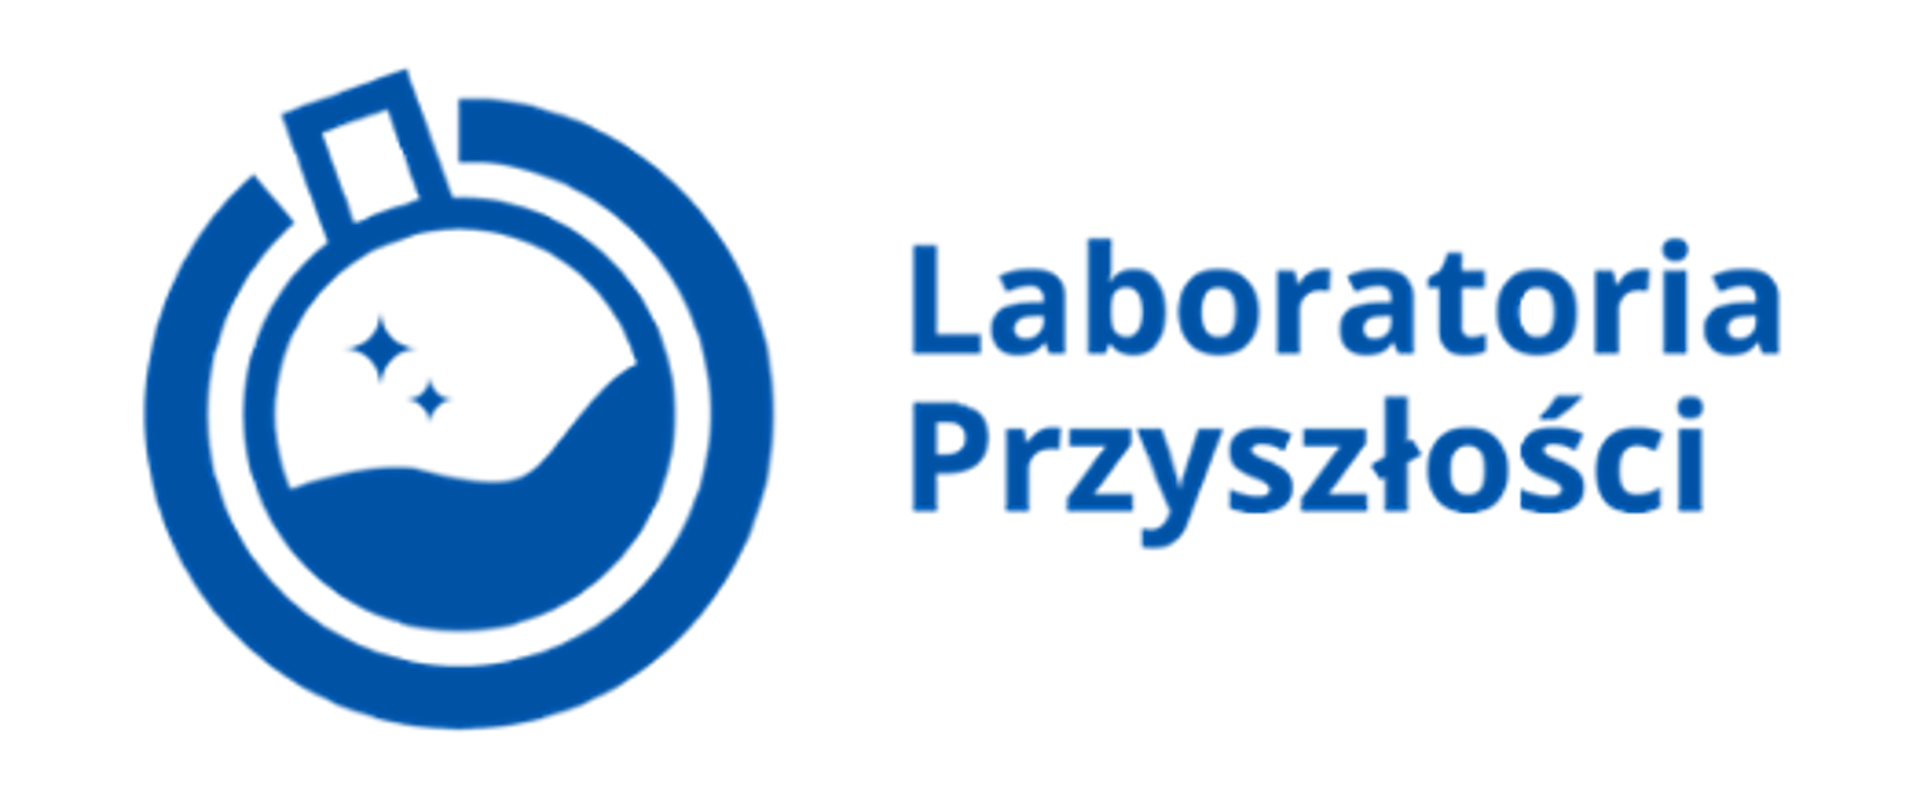 Zdjęcie przedstawia logo programu pt Laboratoria przyszłości.